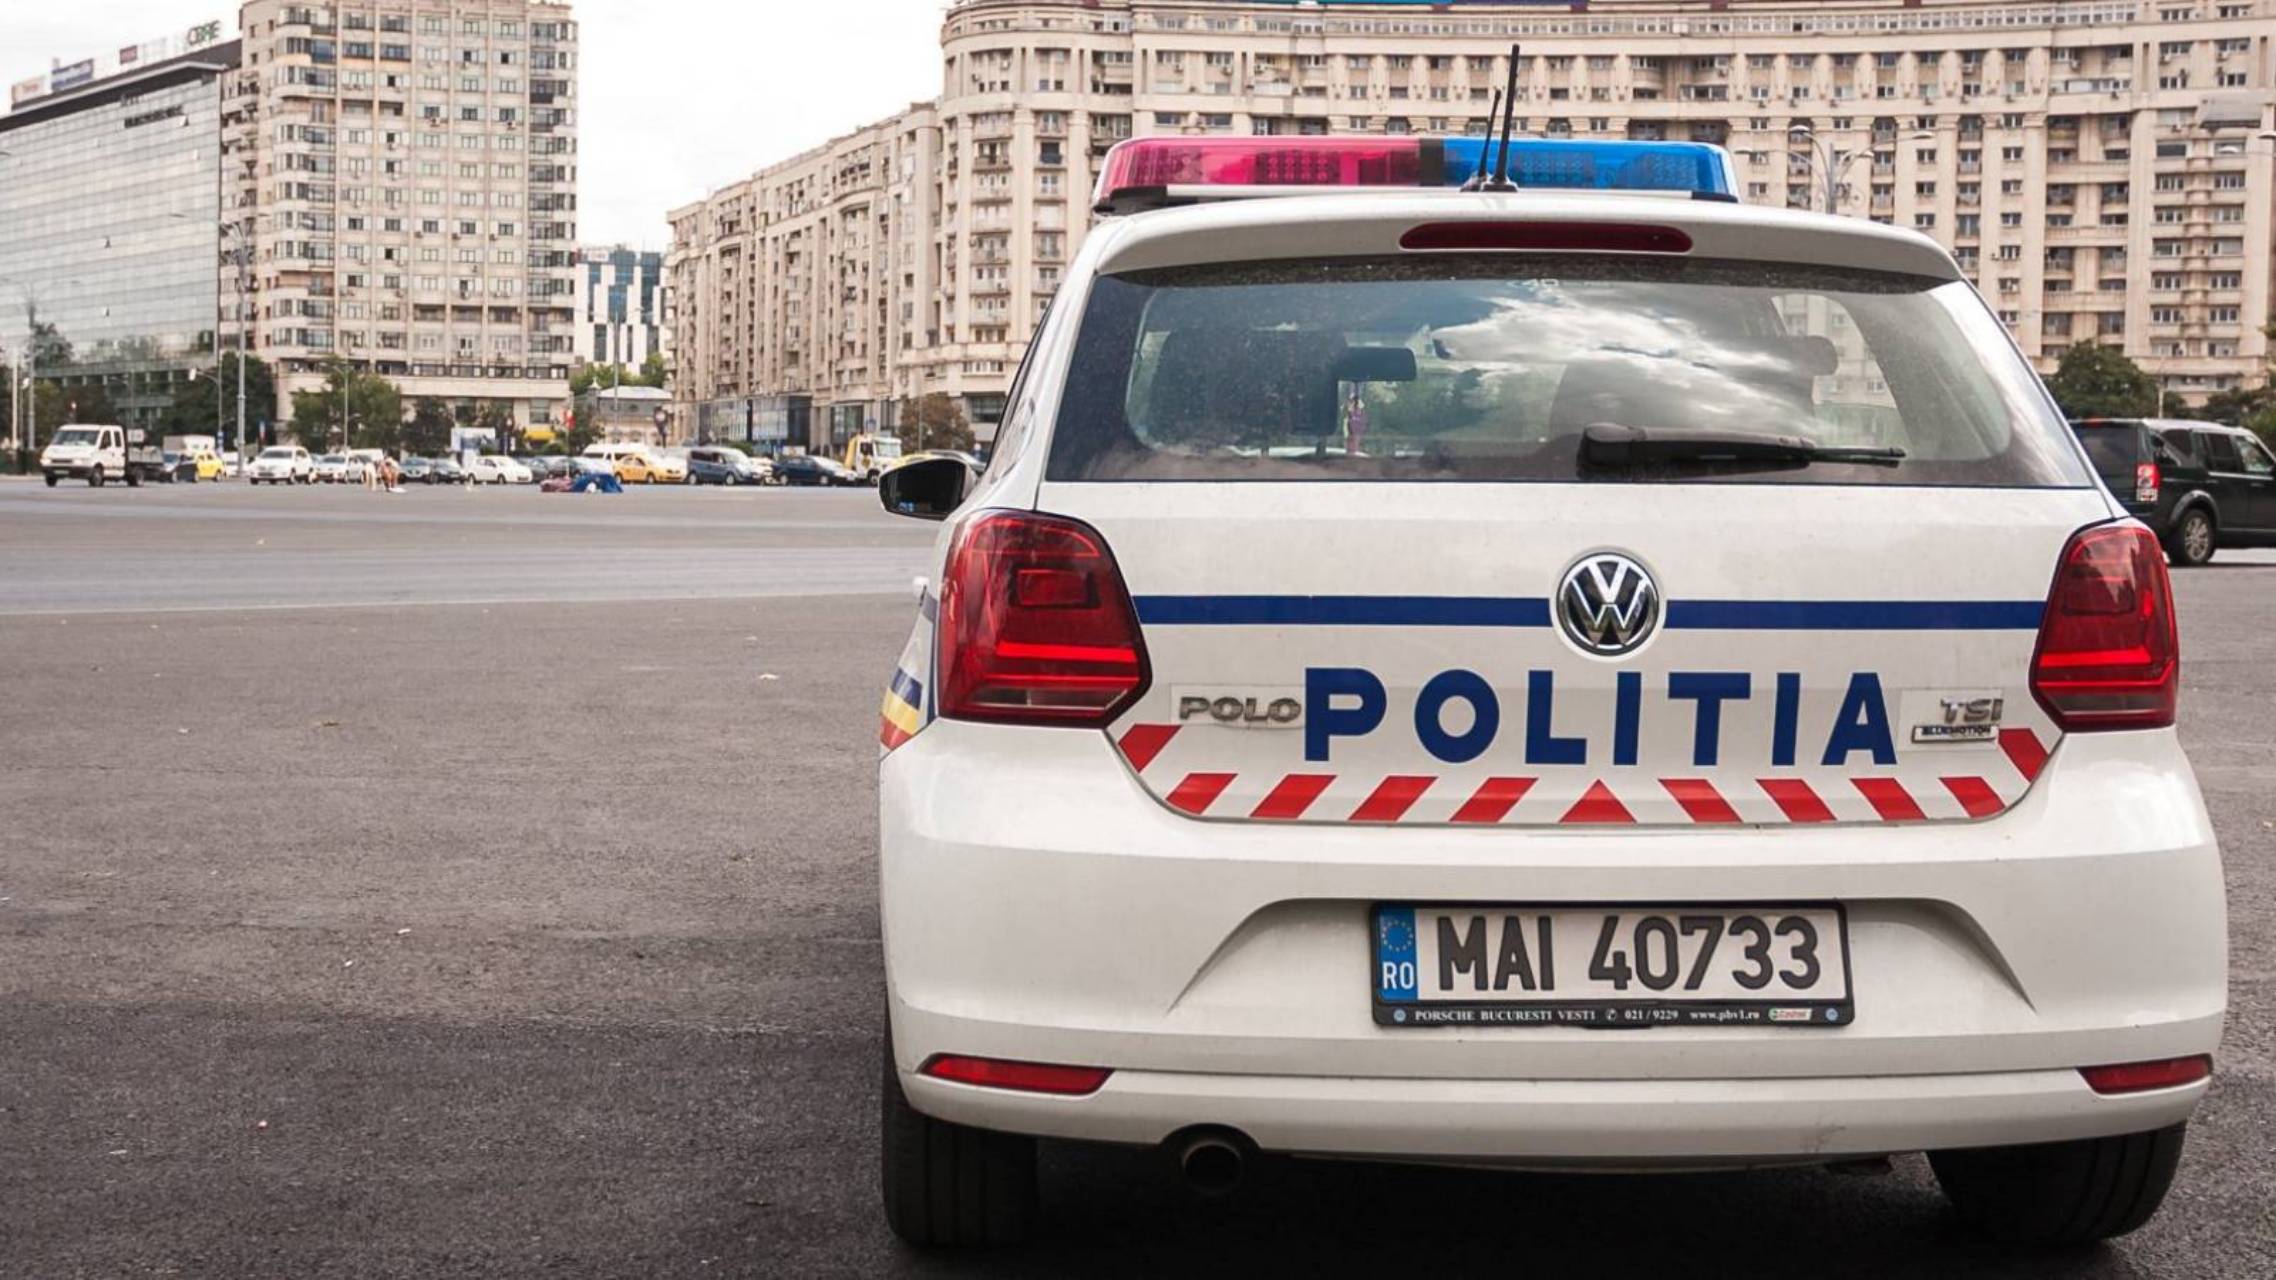 Roemeense politie ZEER BELANGRIJKE WAARSCHUWING voor ALLE Roemenen